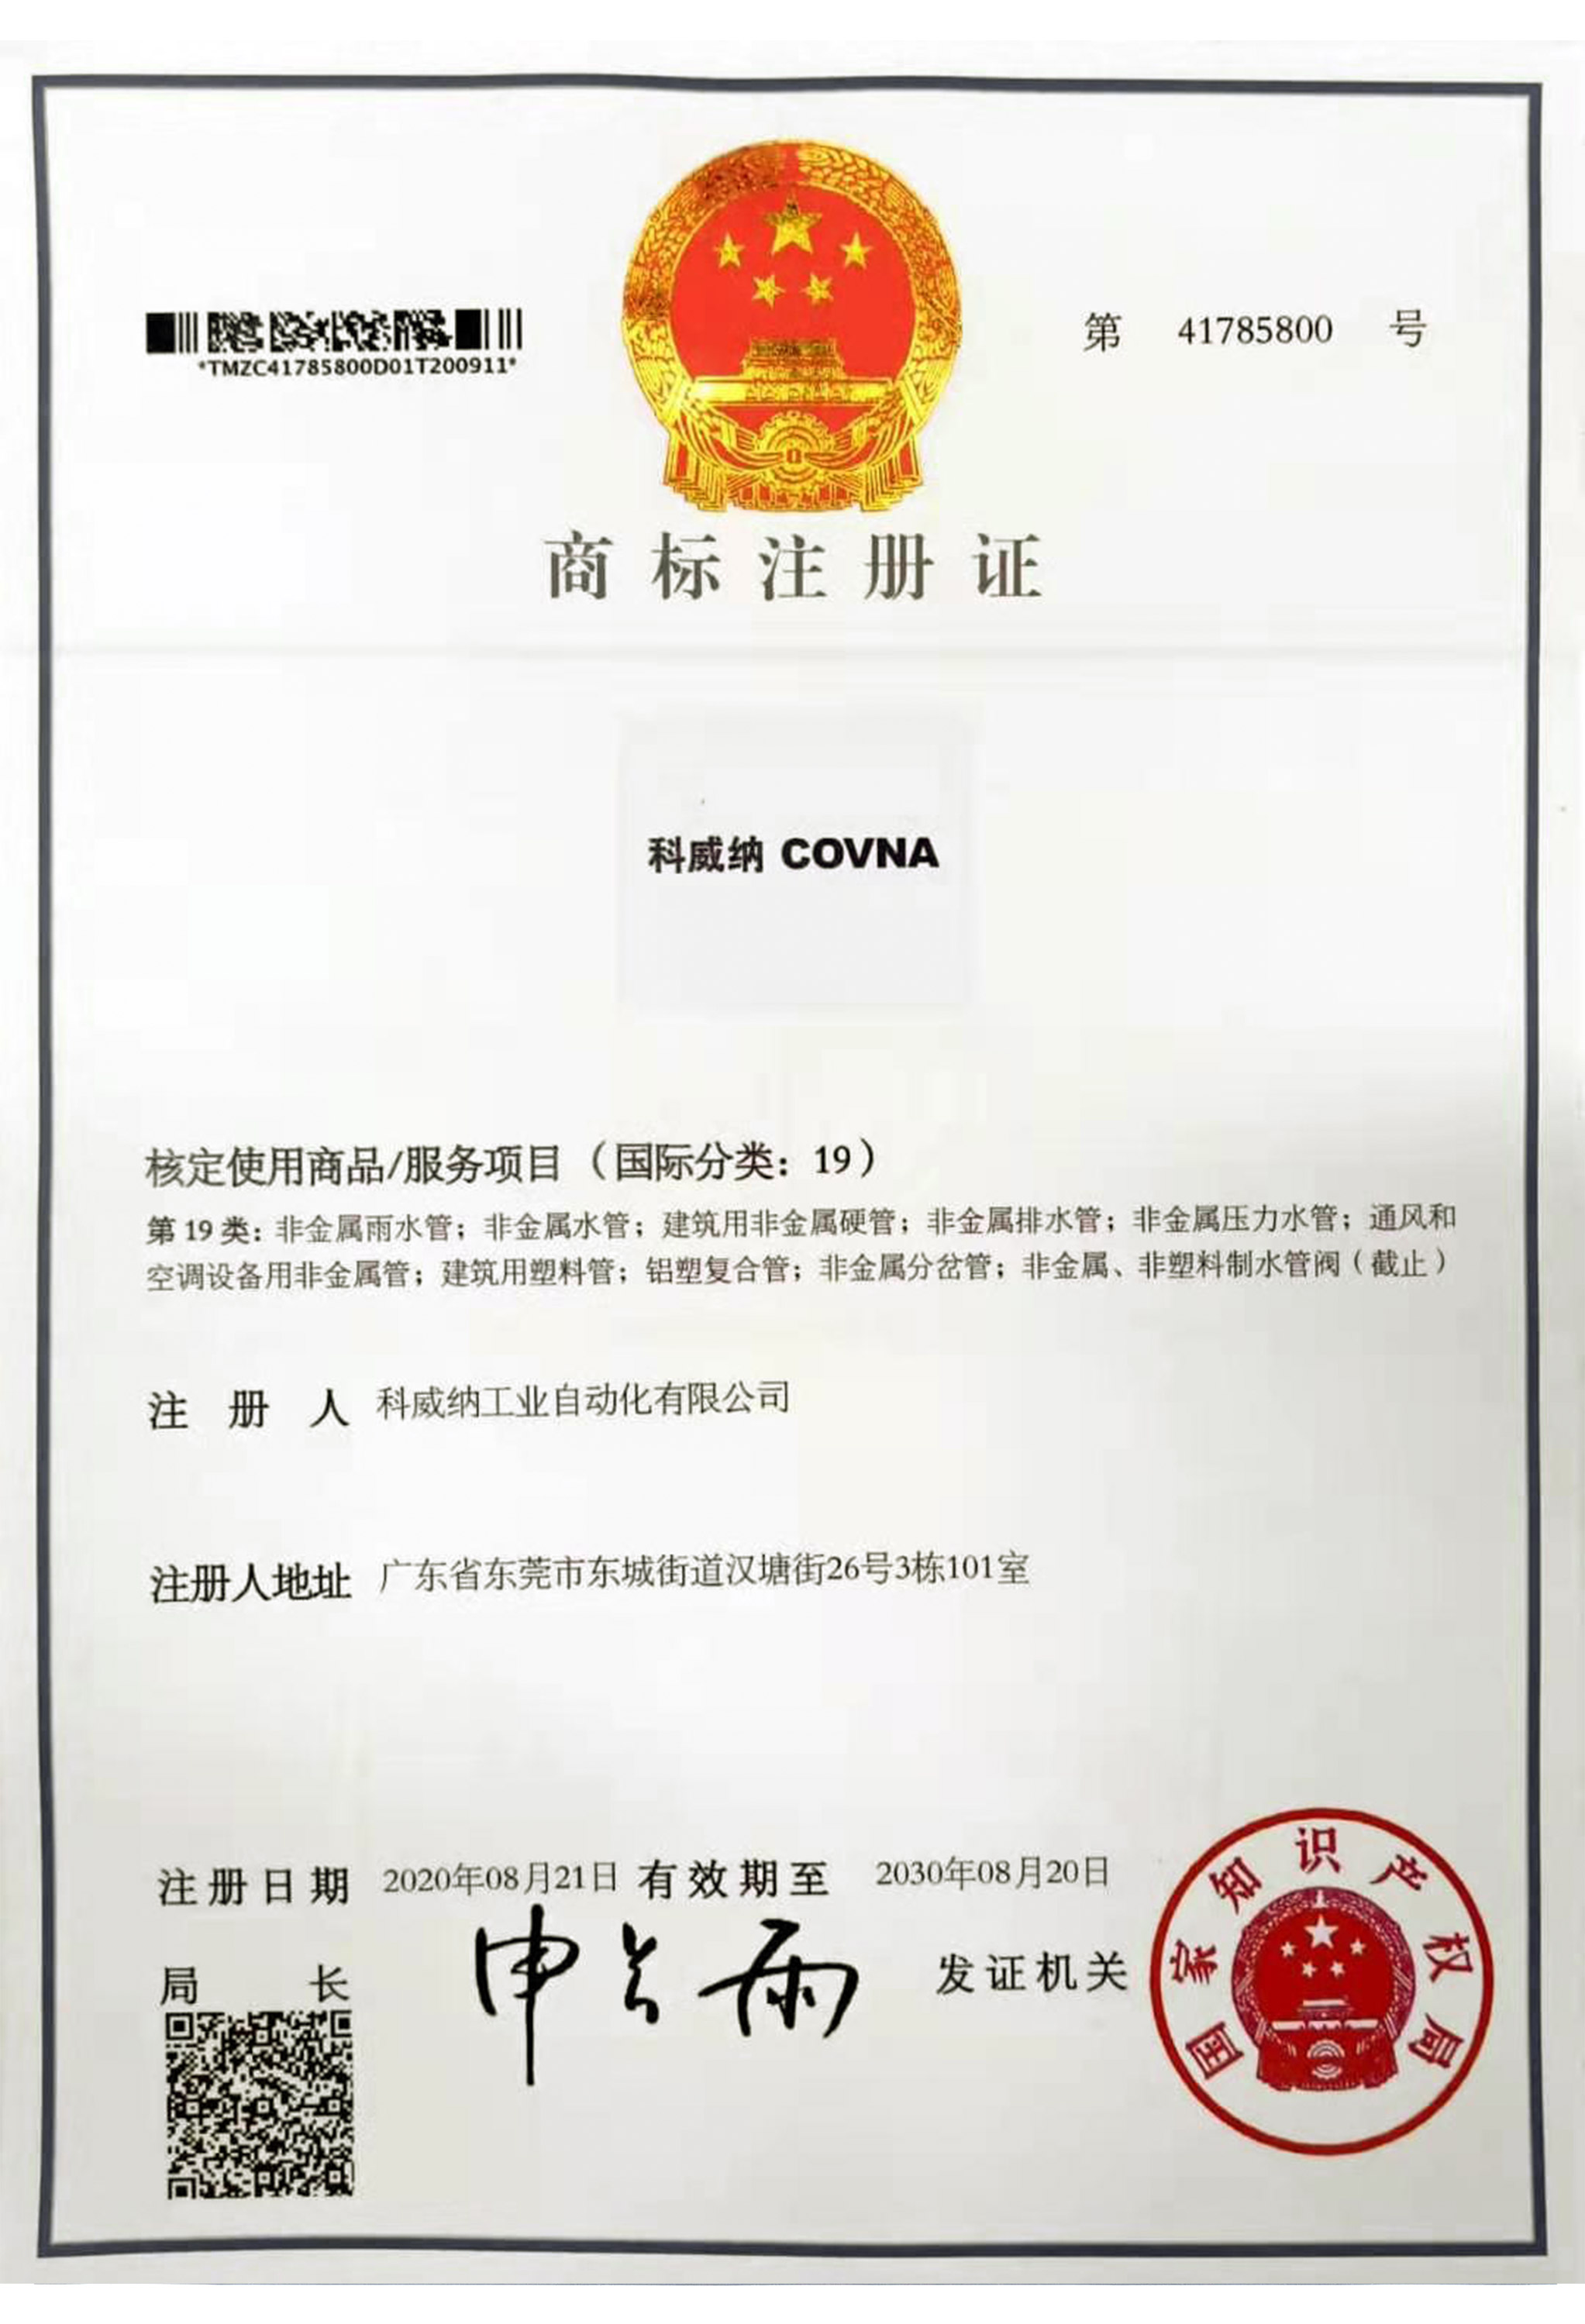 澳门尼威斯人COVNA商标证书